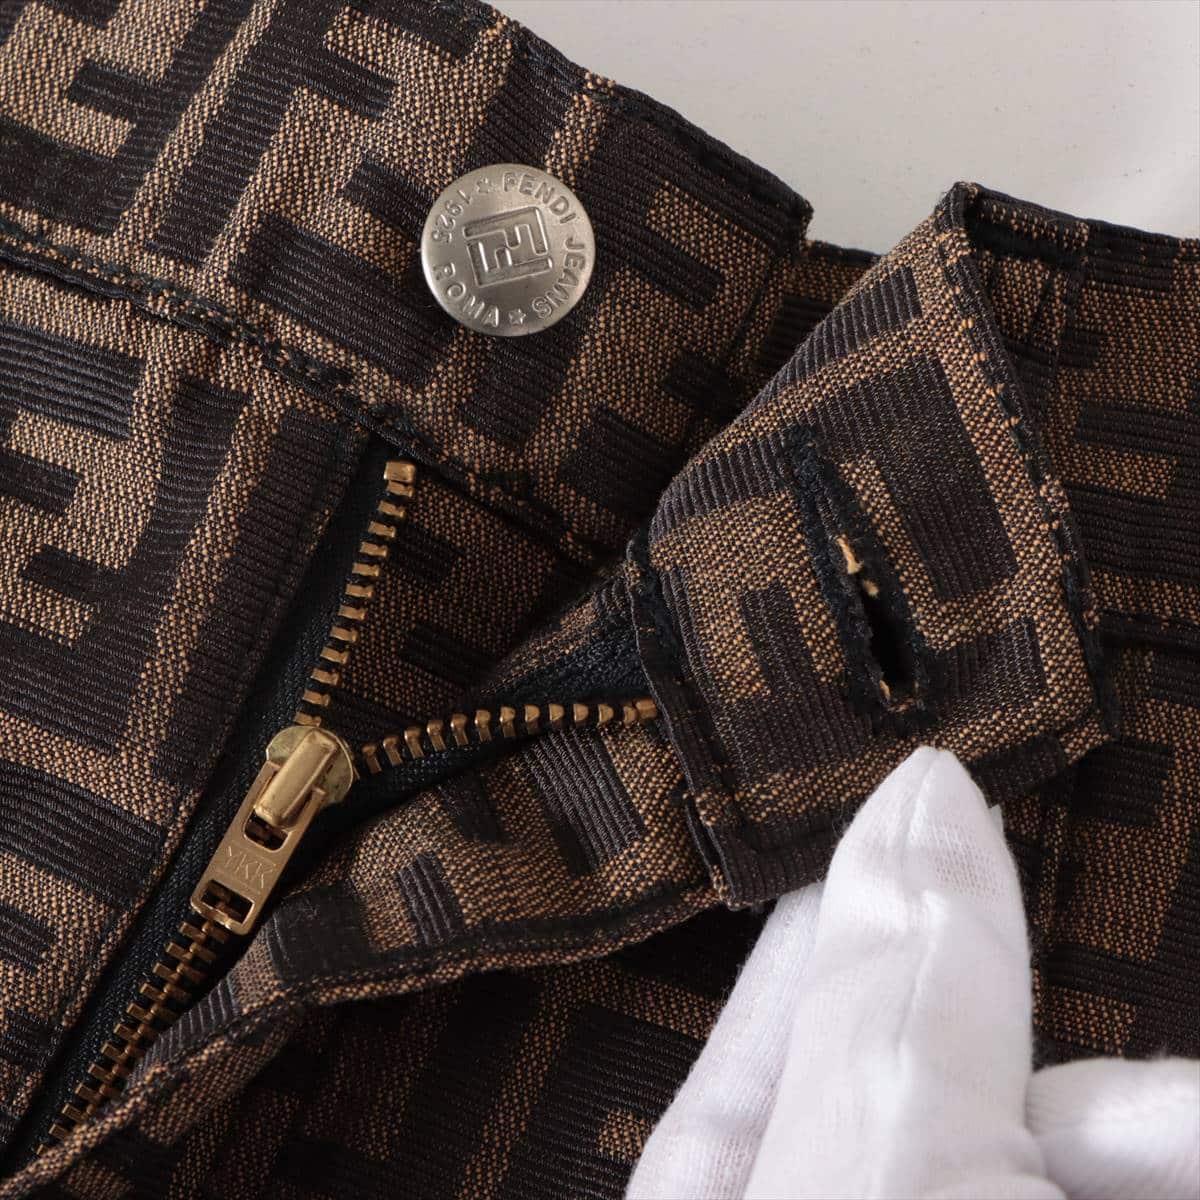 Fendi ZUCCa Cotton & polyester Skirt 44 Ladies' Black × Brown